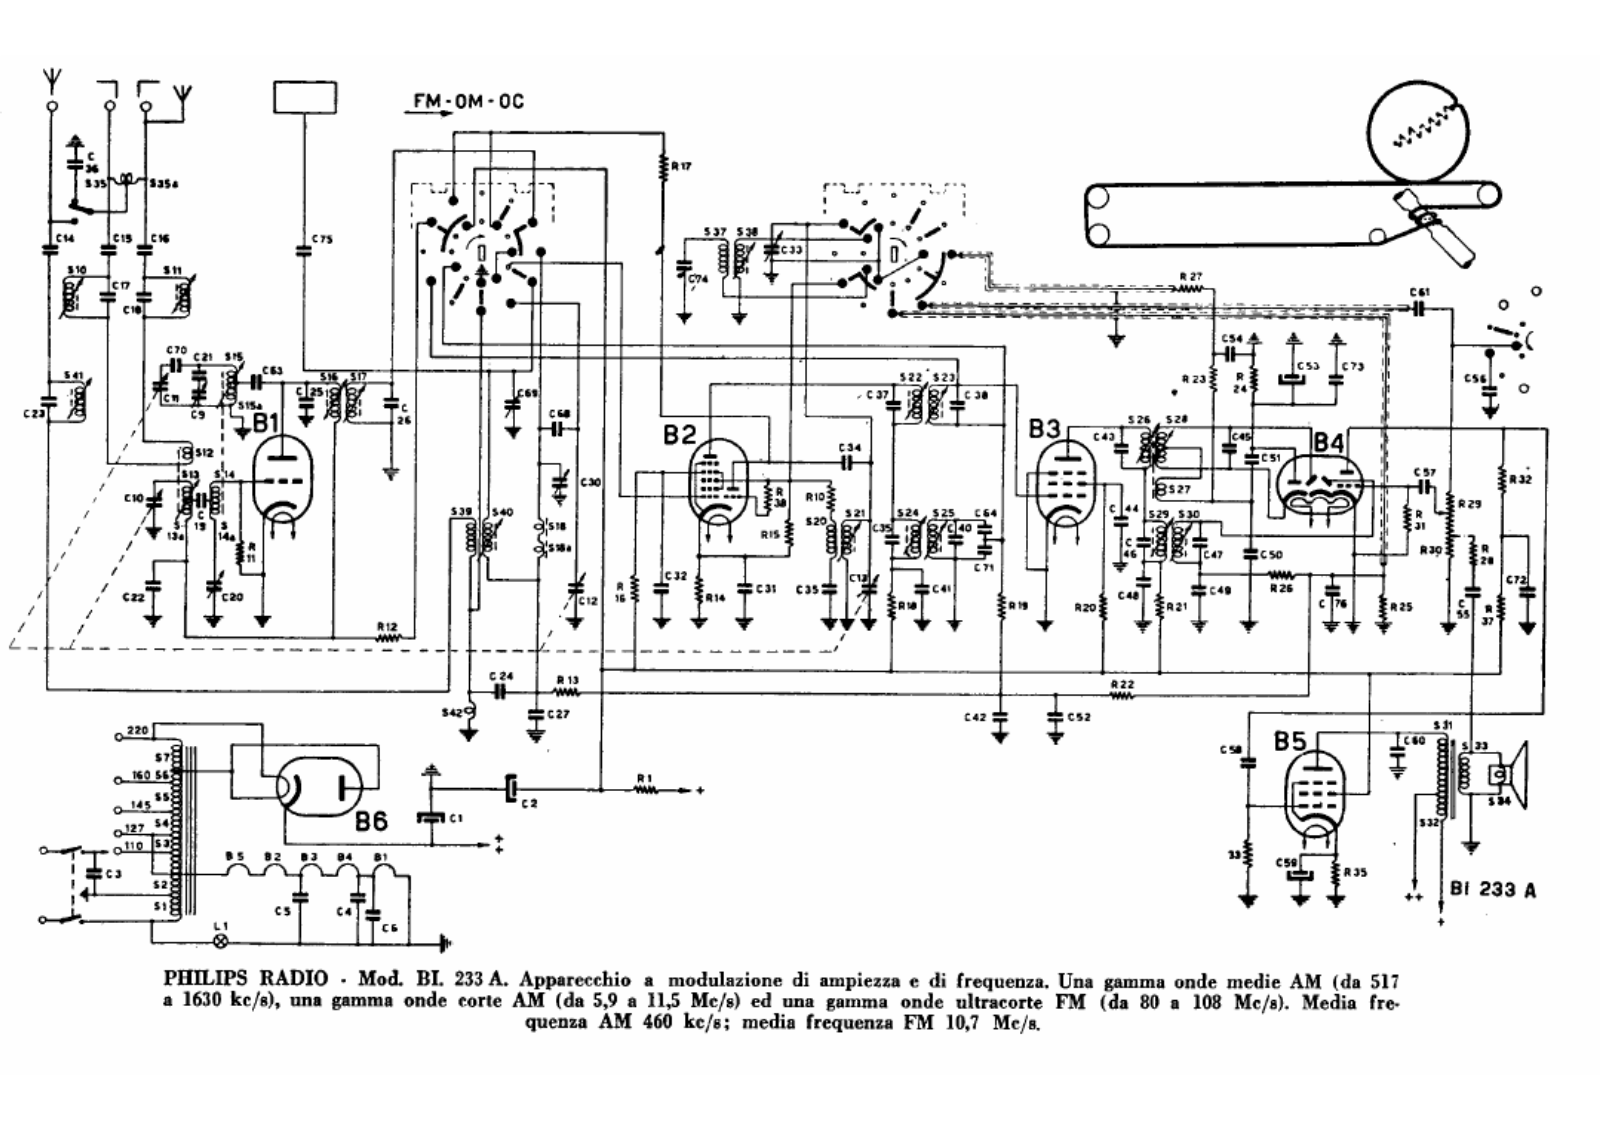 Philips bi233a schematic